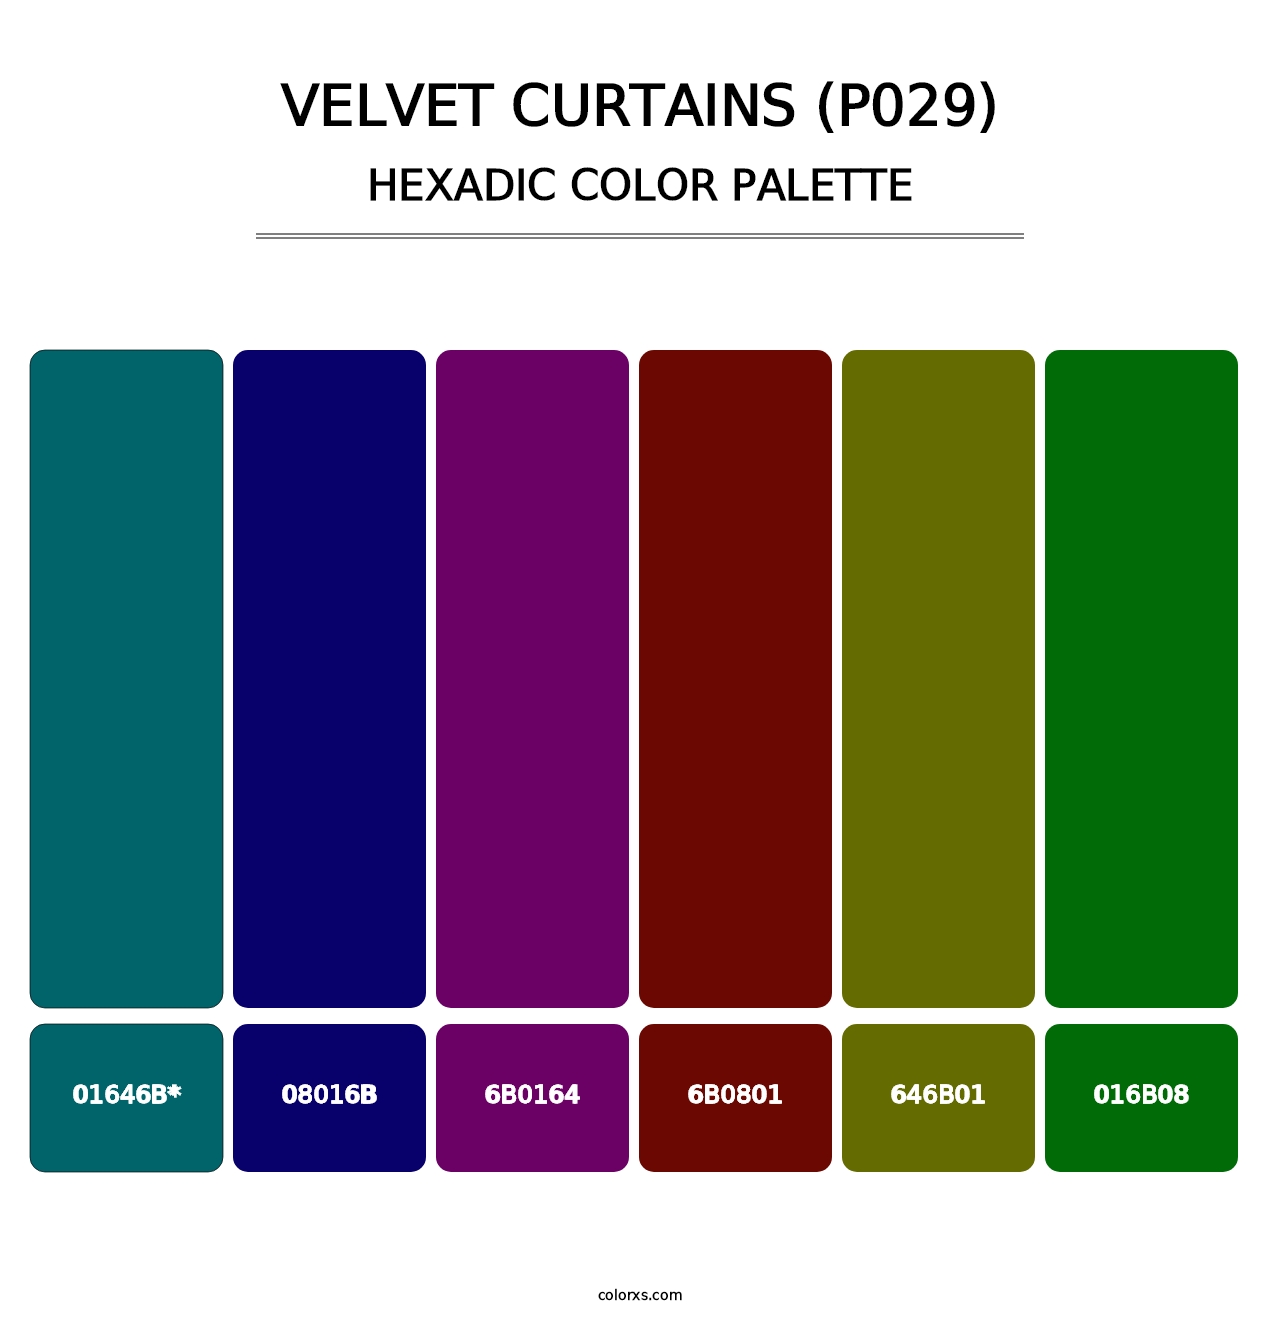 Velvet Curtains (P029) - Hexadic Color Palette